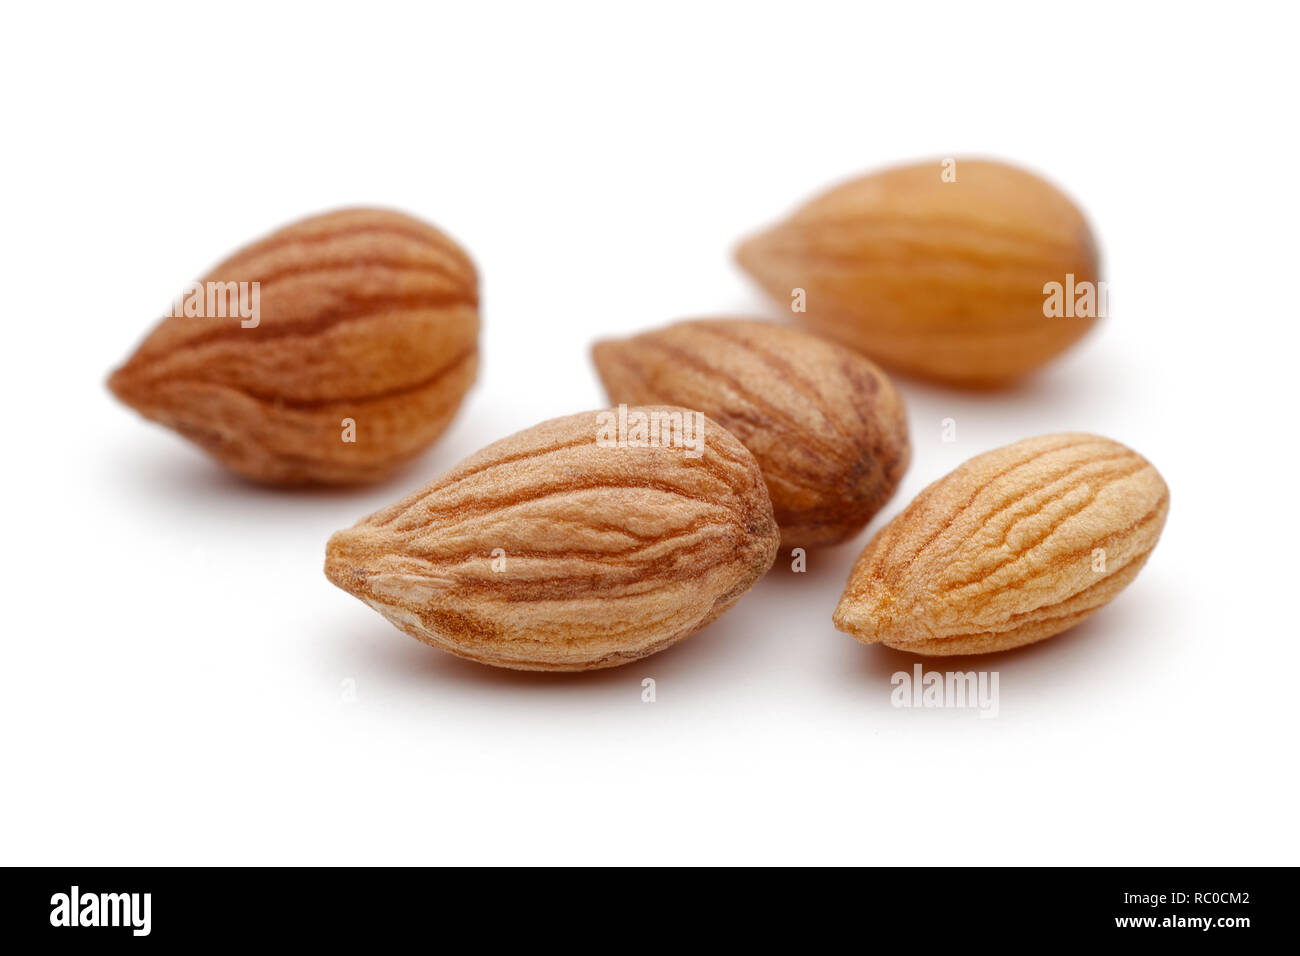 Mahlep or Mahaleb seeds isolated on white background Stock Photo